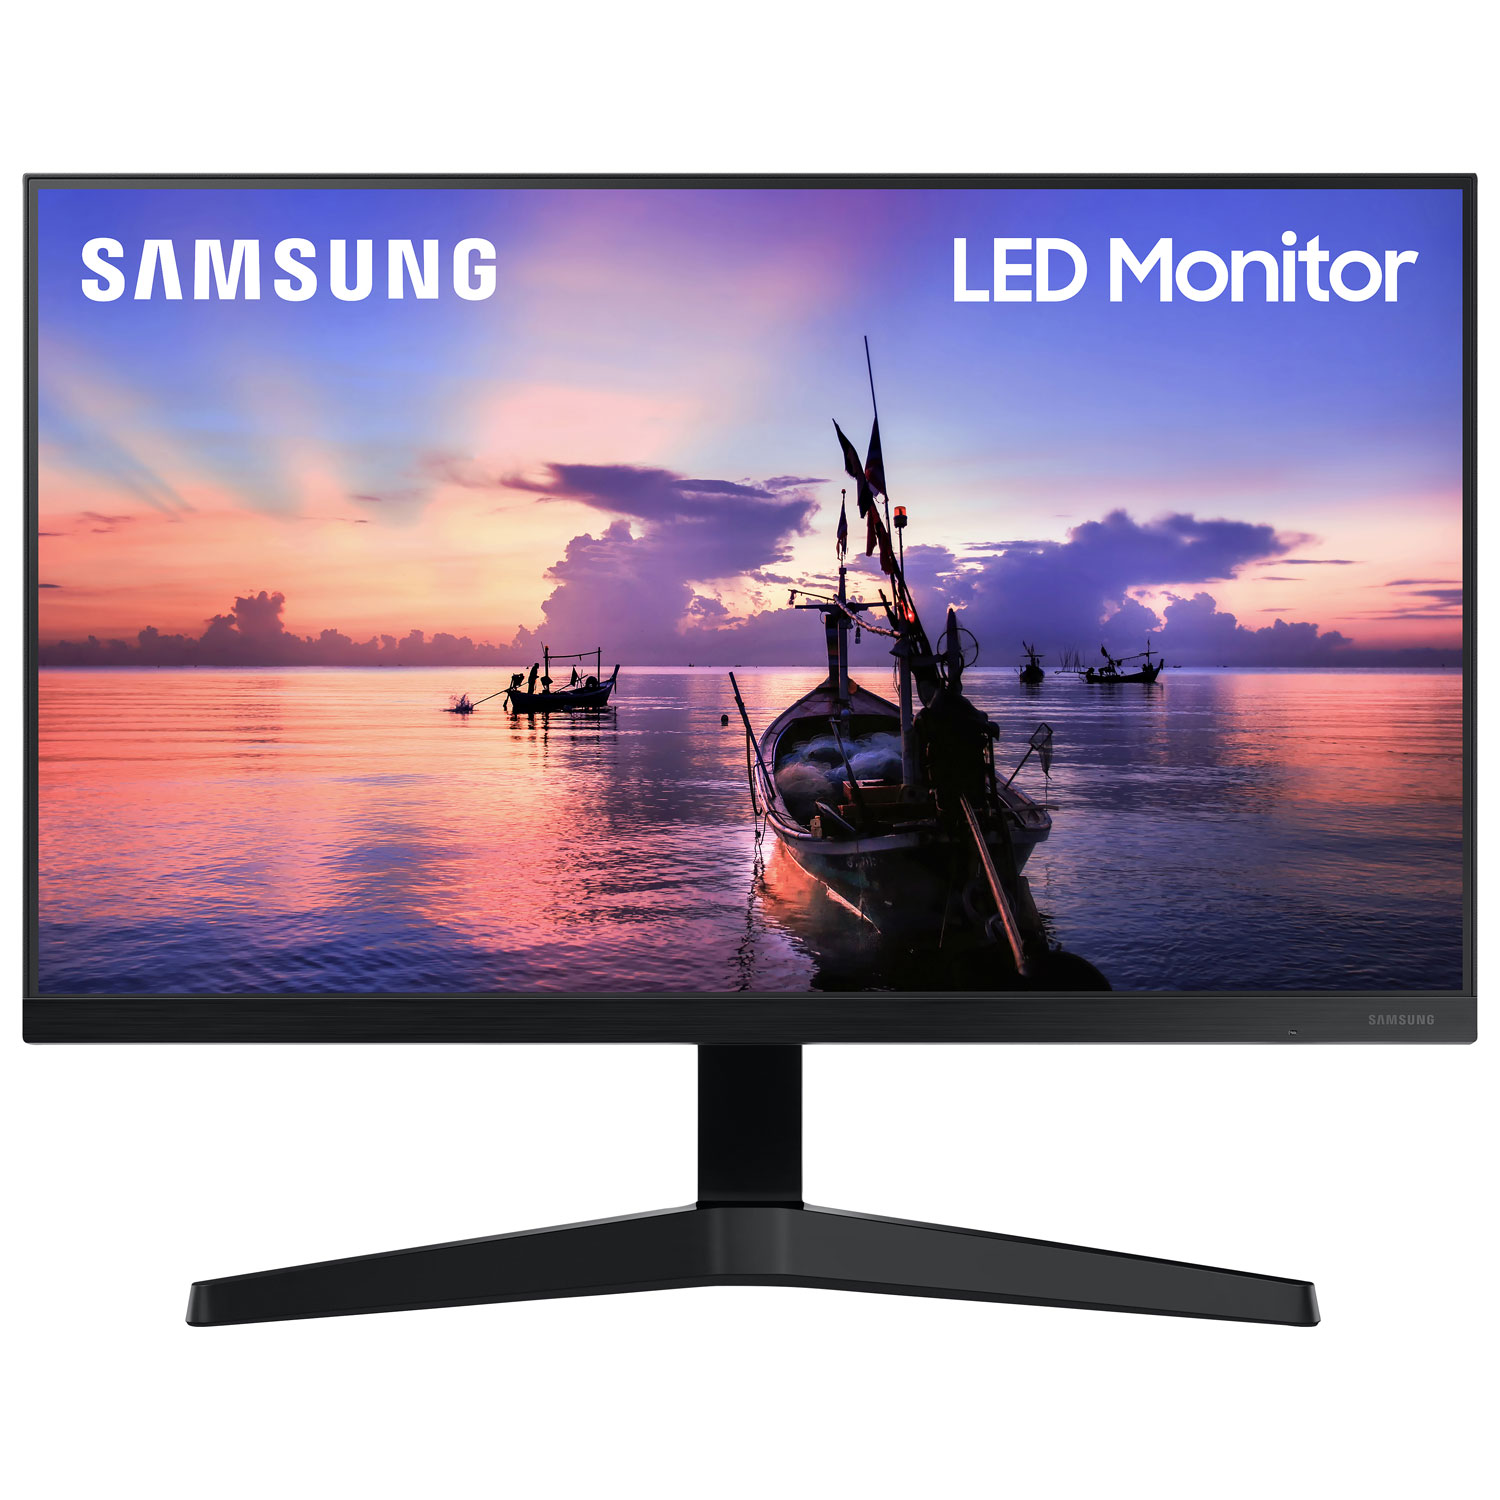 Samsung 27" FHD 75Hz 5ms GTG IPS LED FreeSync Monitor (LF27T350FHNXZA) - Dark Blue Grey